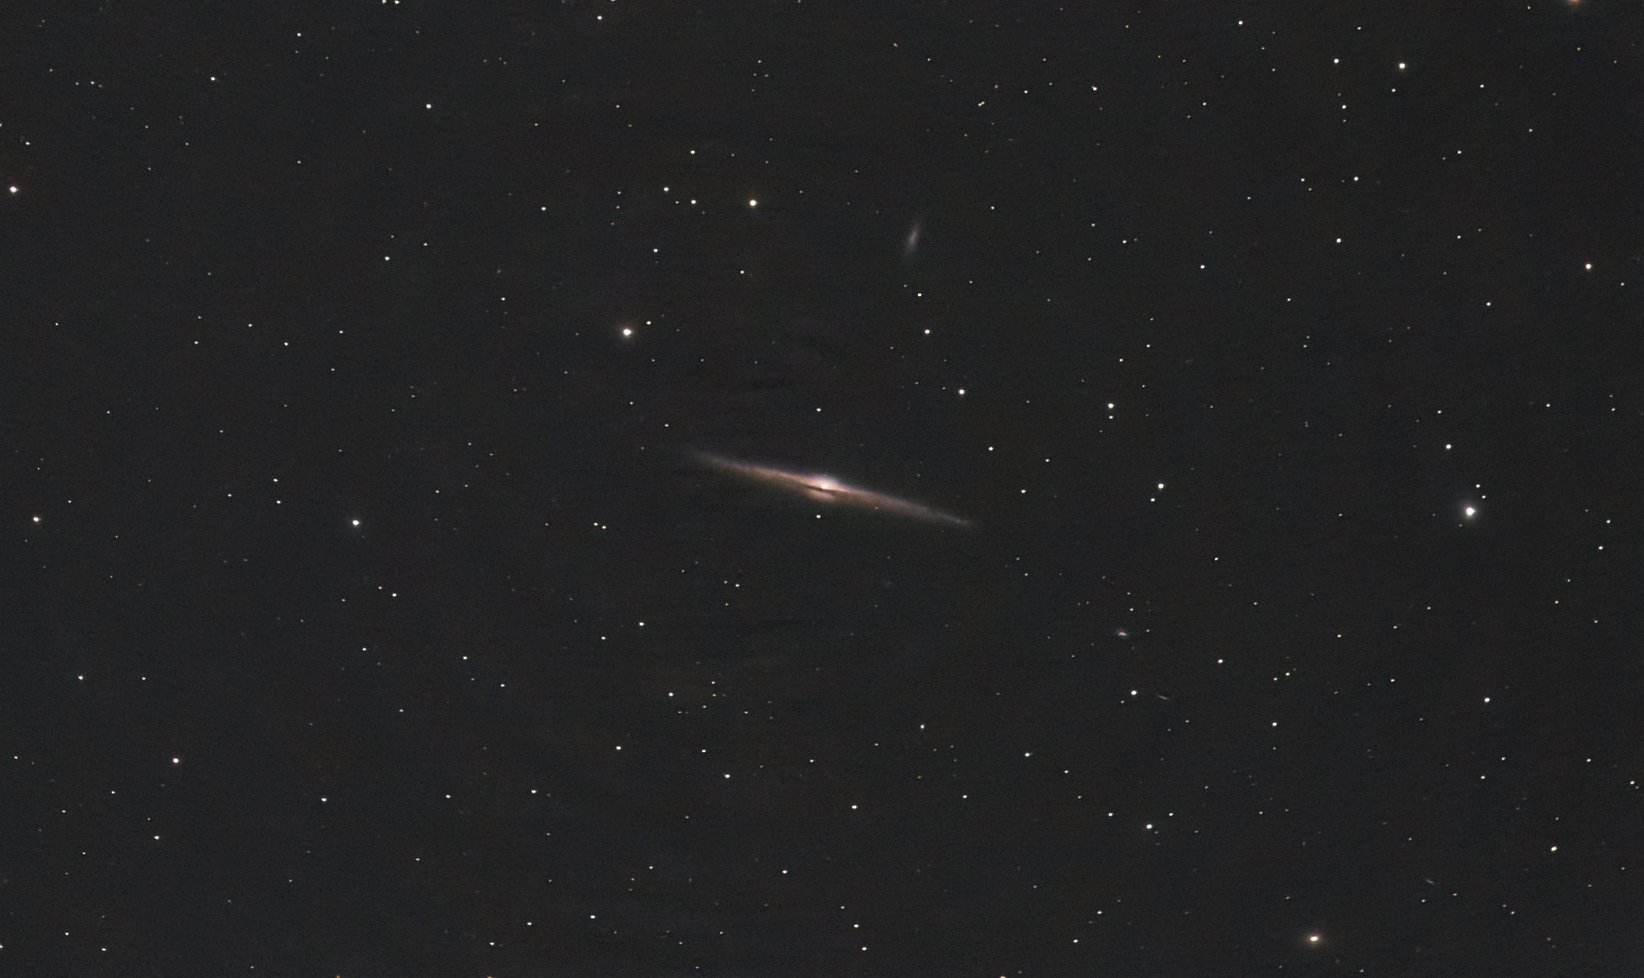 NGC 4565 - Needle Galaxy